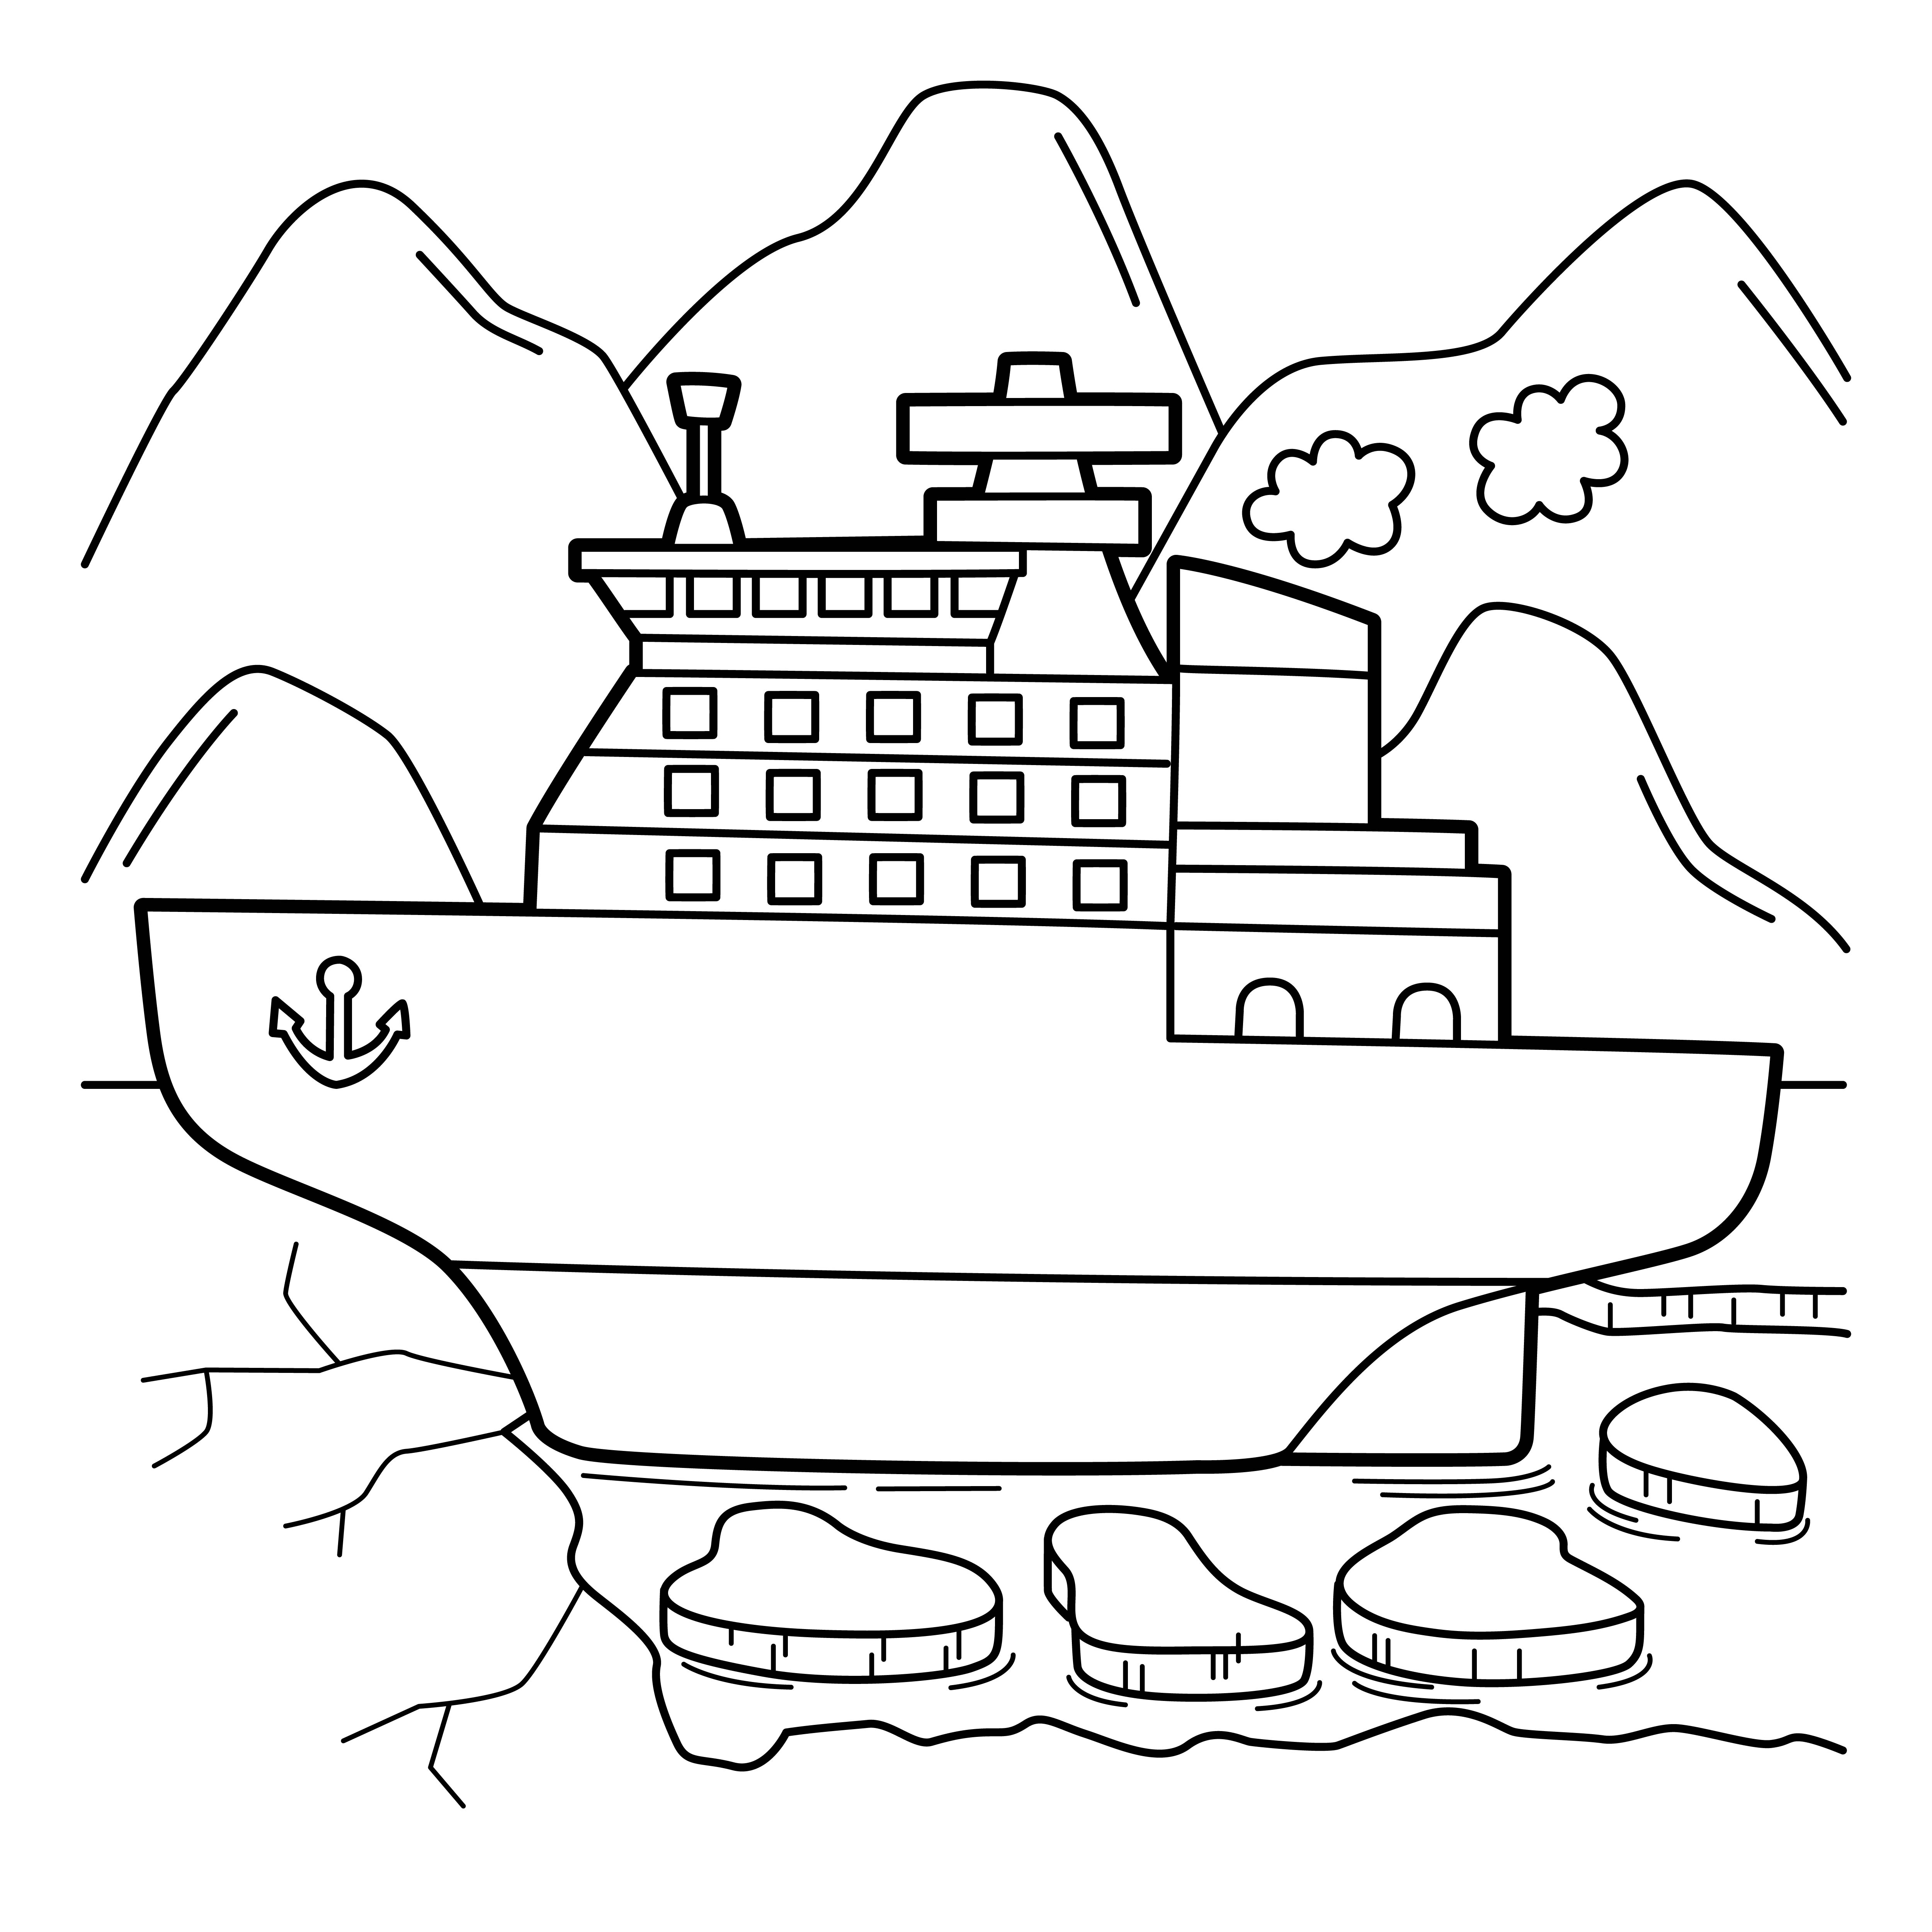 Раскраска корабль ледокол с якорем формата А4 в высоком качестве